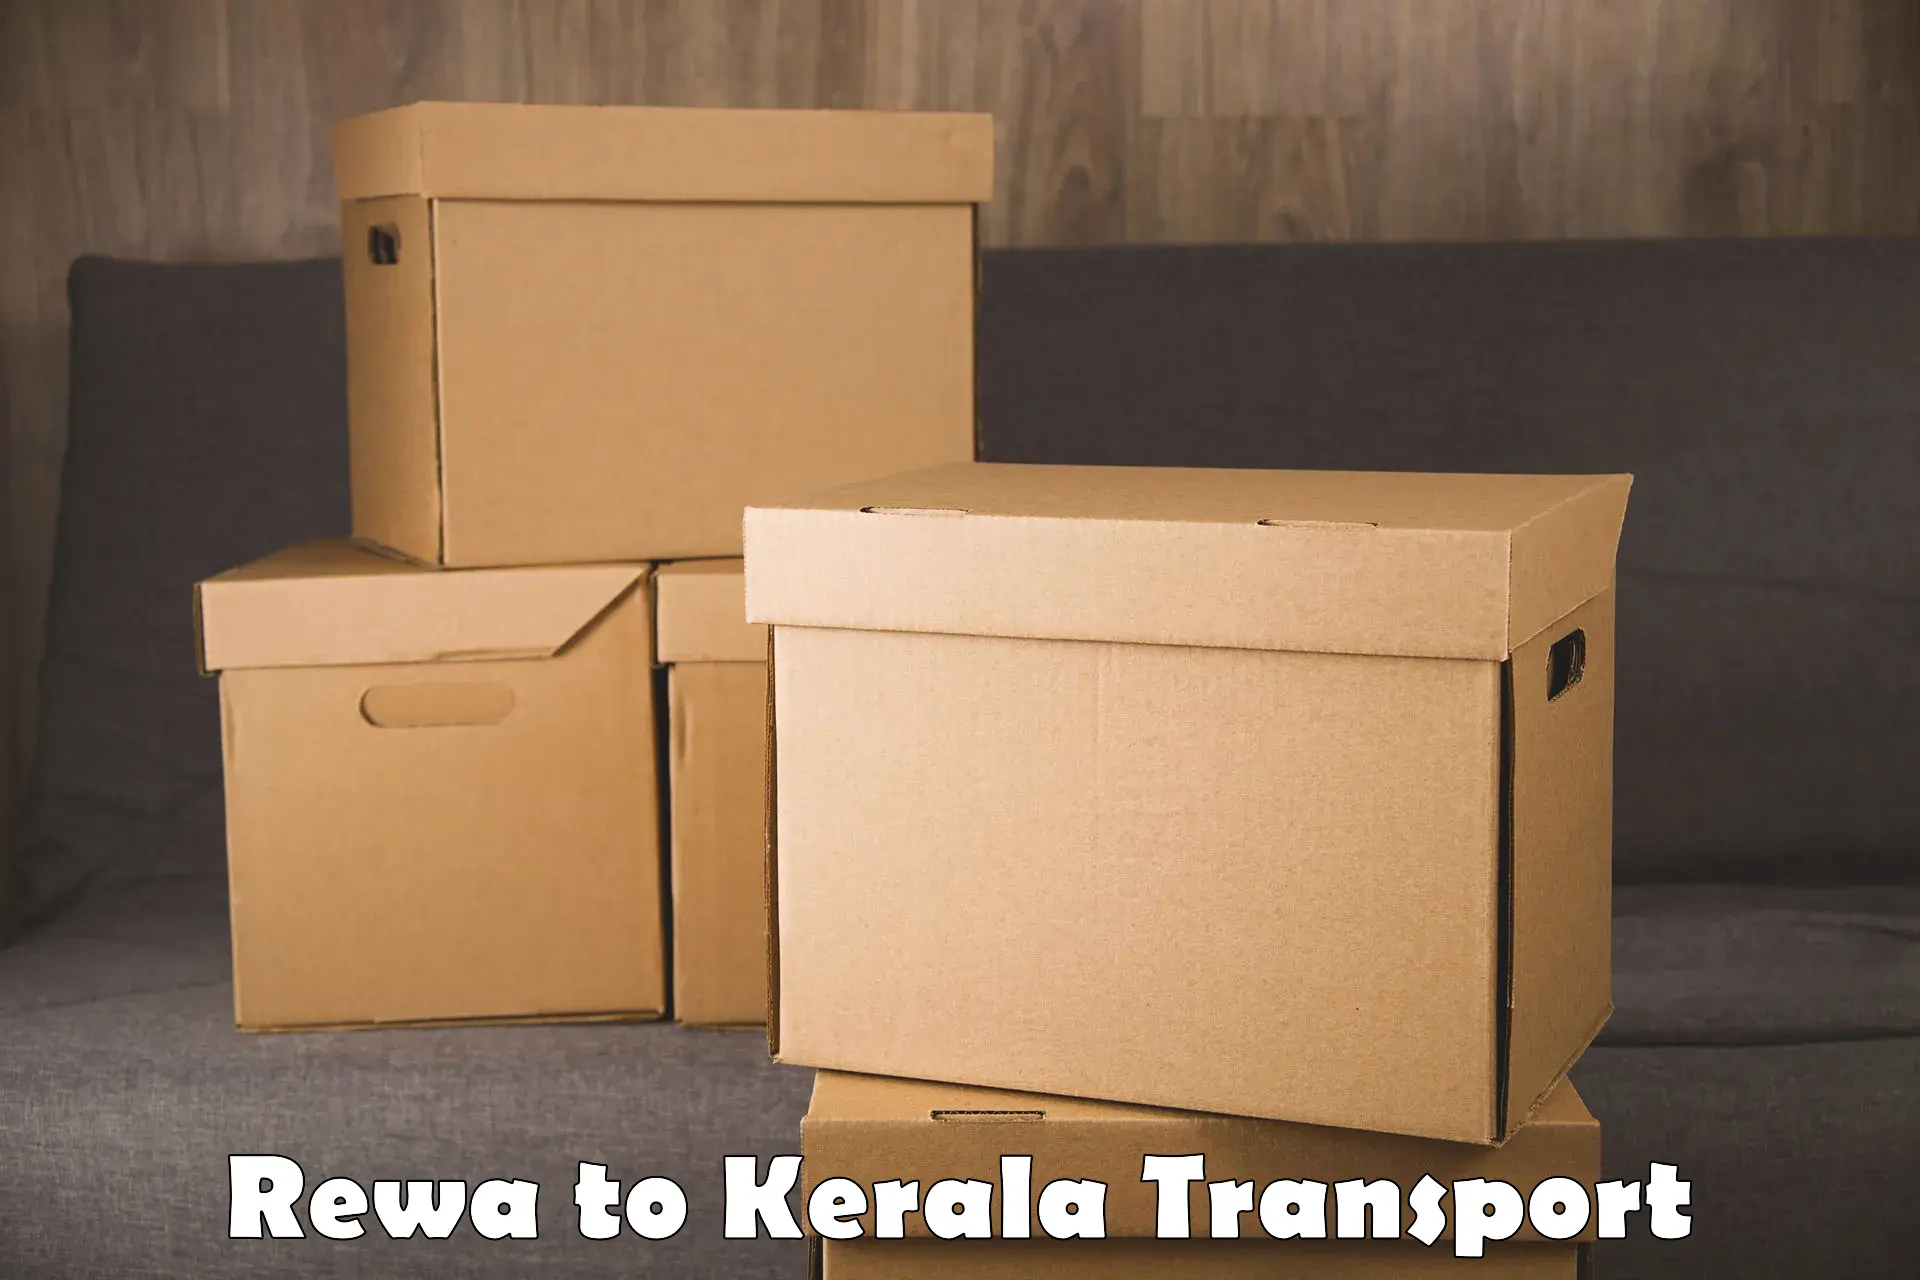 Online transport service Rewa to Panthalam